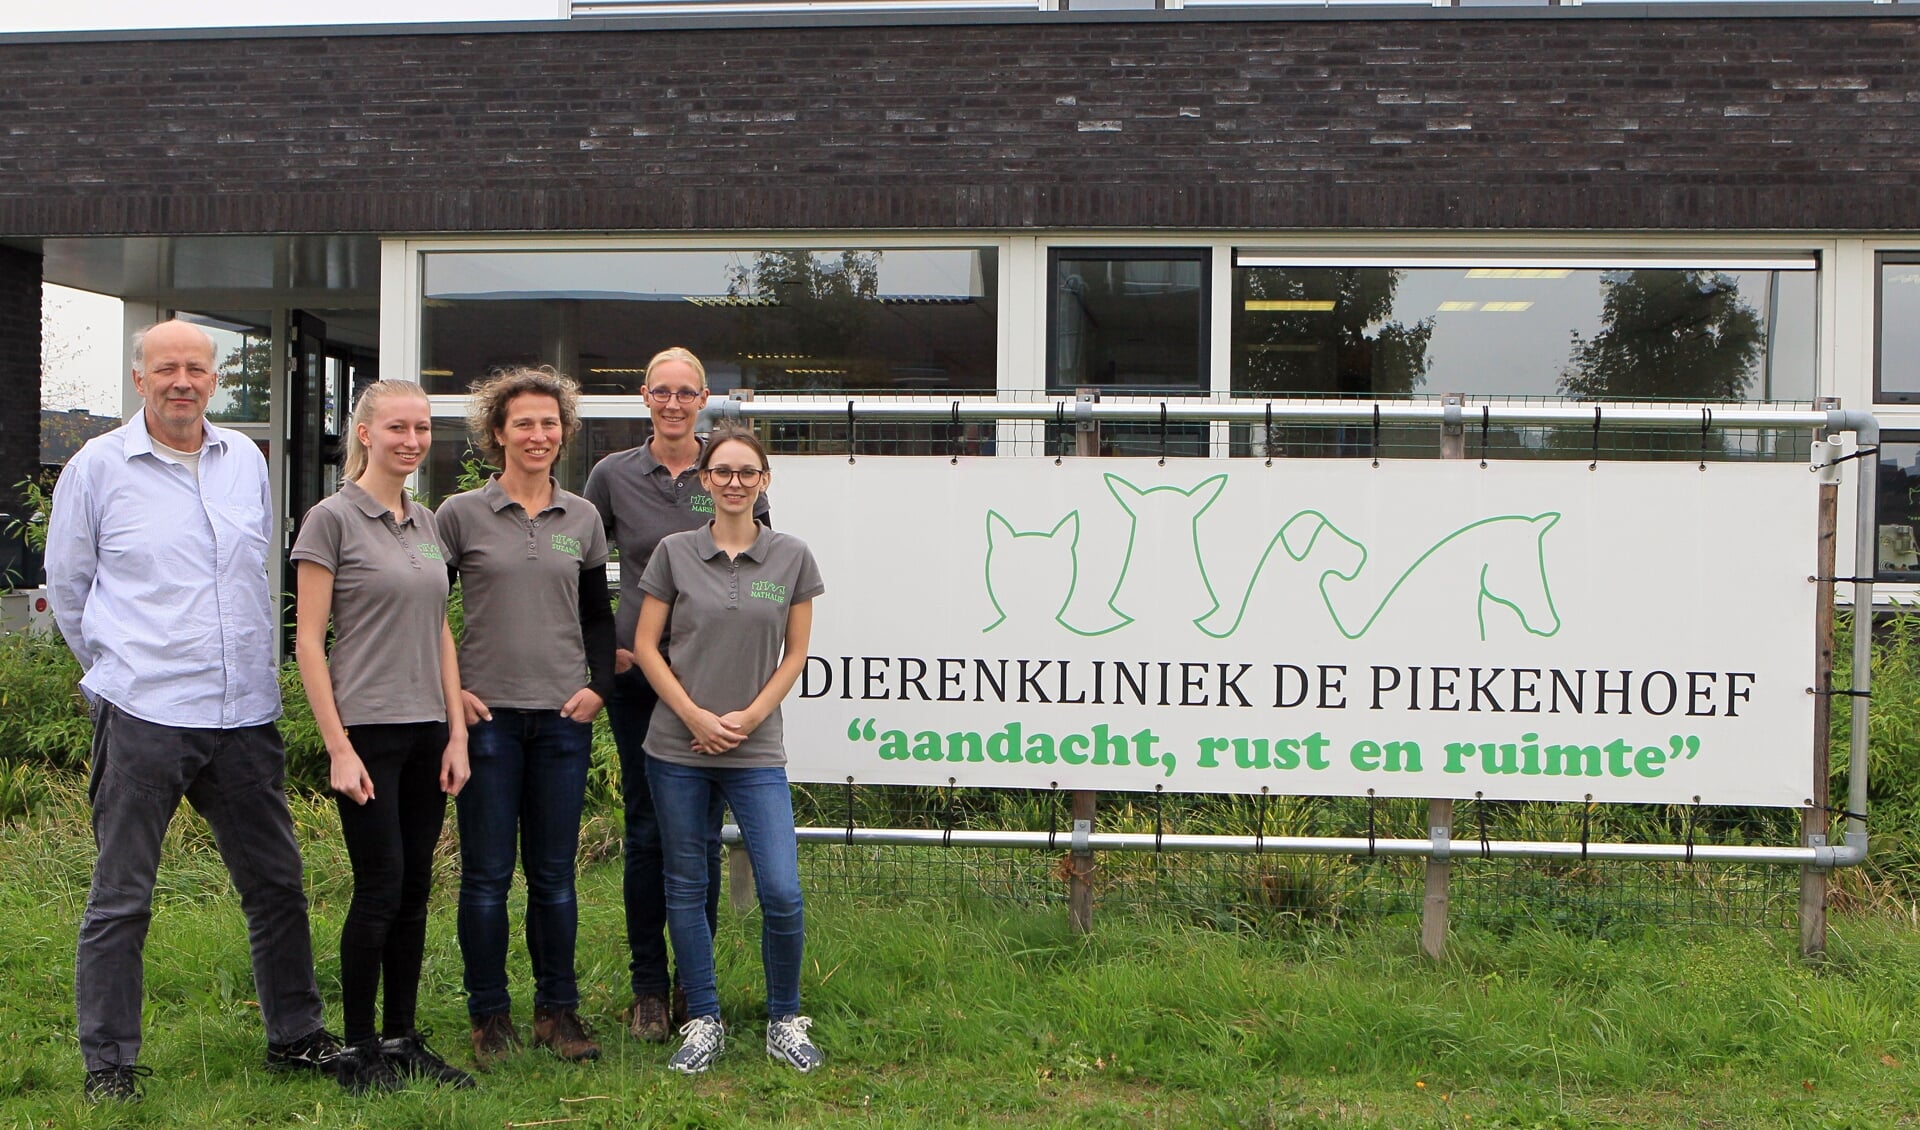 Het team van Dierenkliniek de Piekenhoef. (Foto: Hans van der Poel)